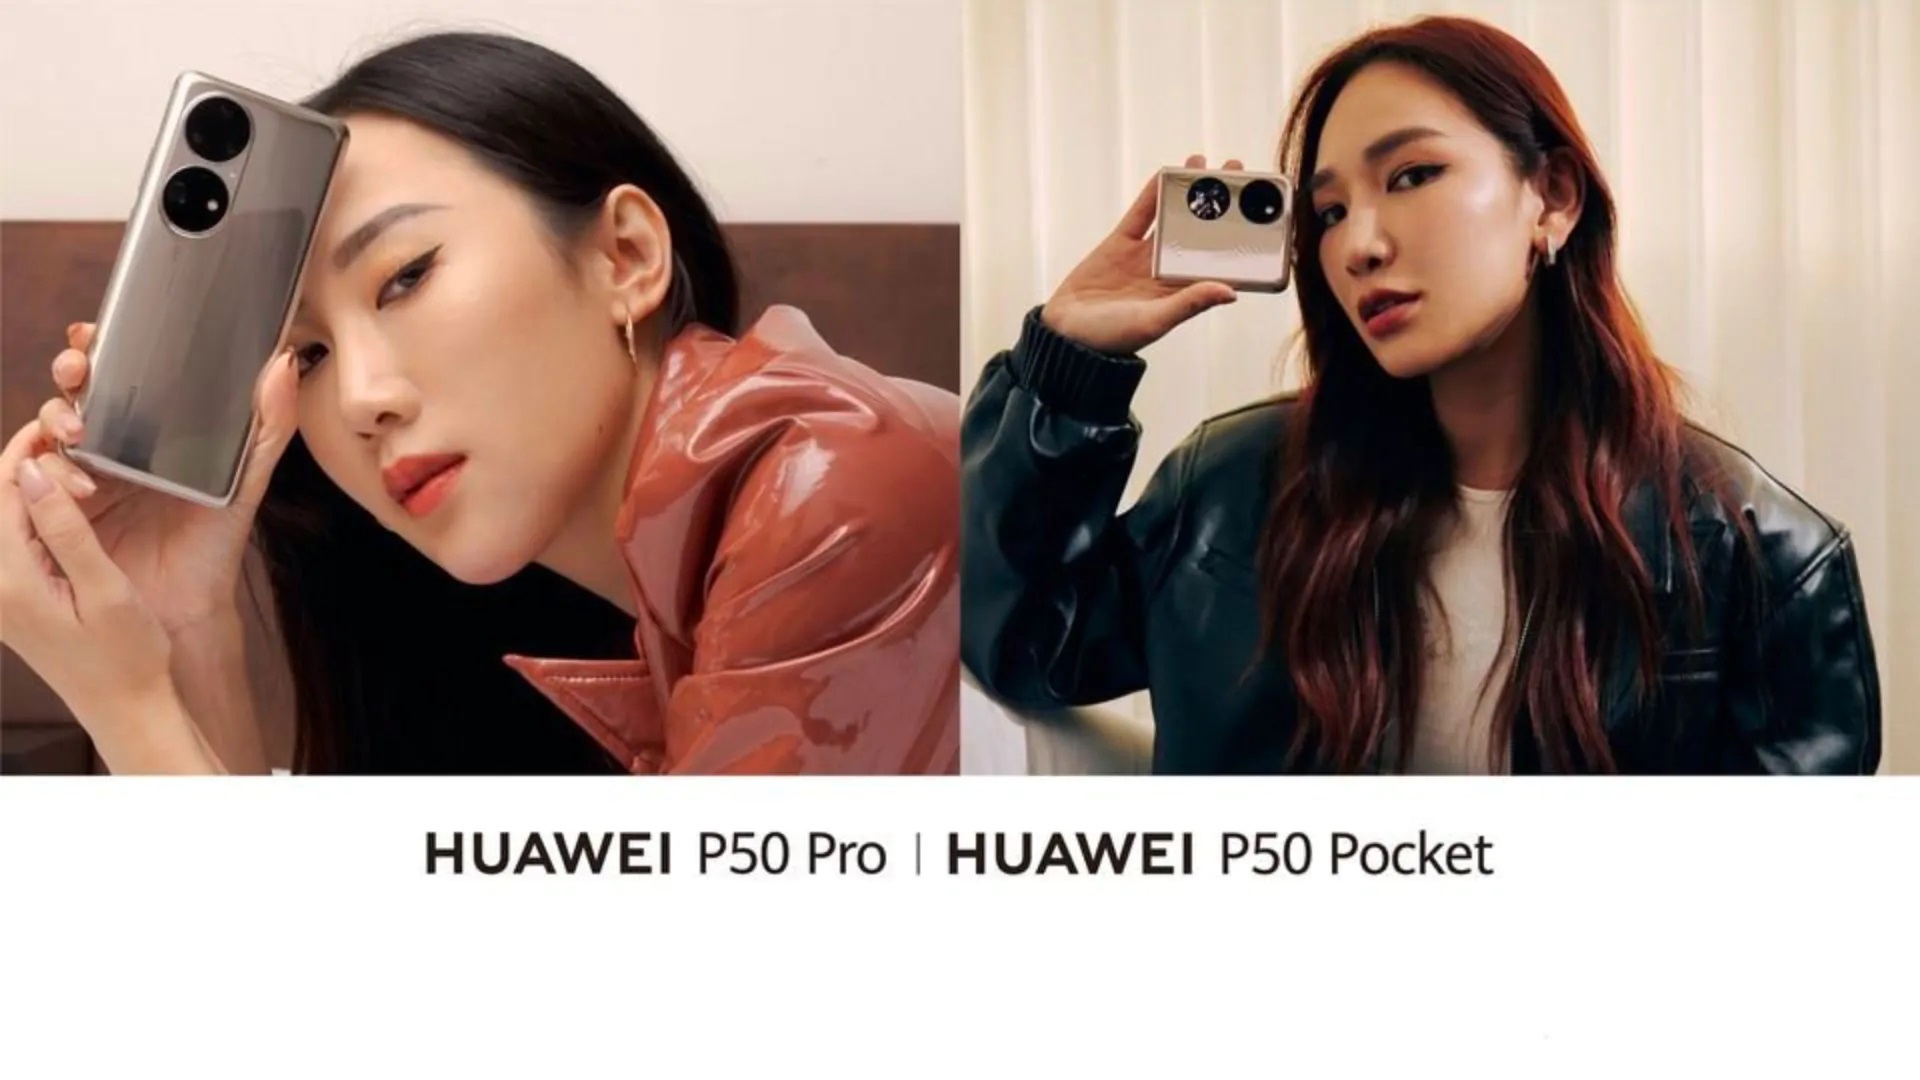 Abgewartet: Huawei wird am 12. Januar das Flaggschiff P50 Pro und das faltbare P50 Pocket auf dem Weltmarkt vorstellen